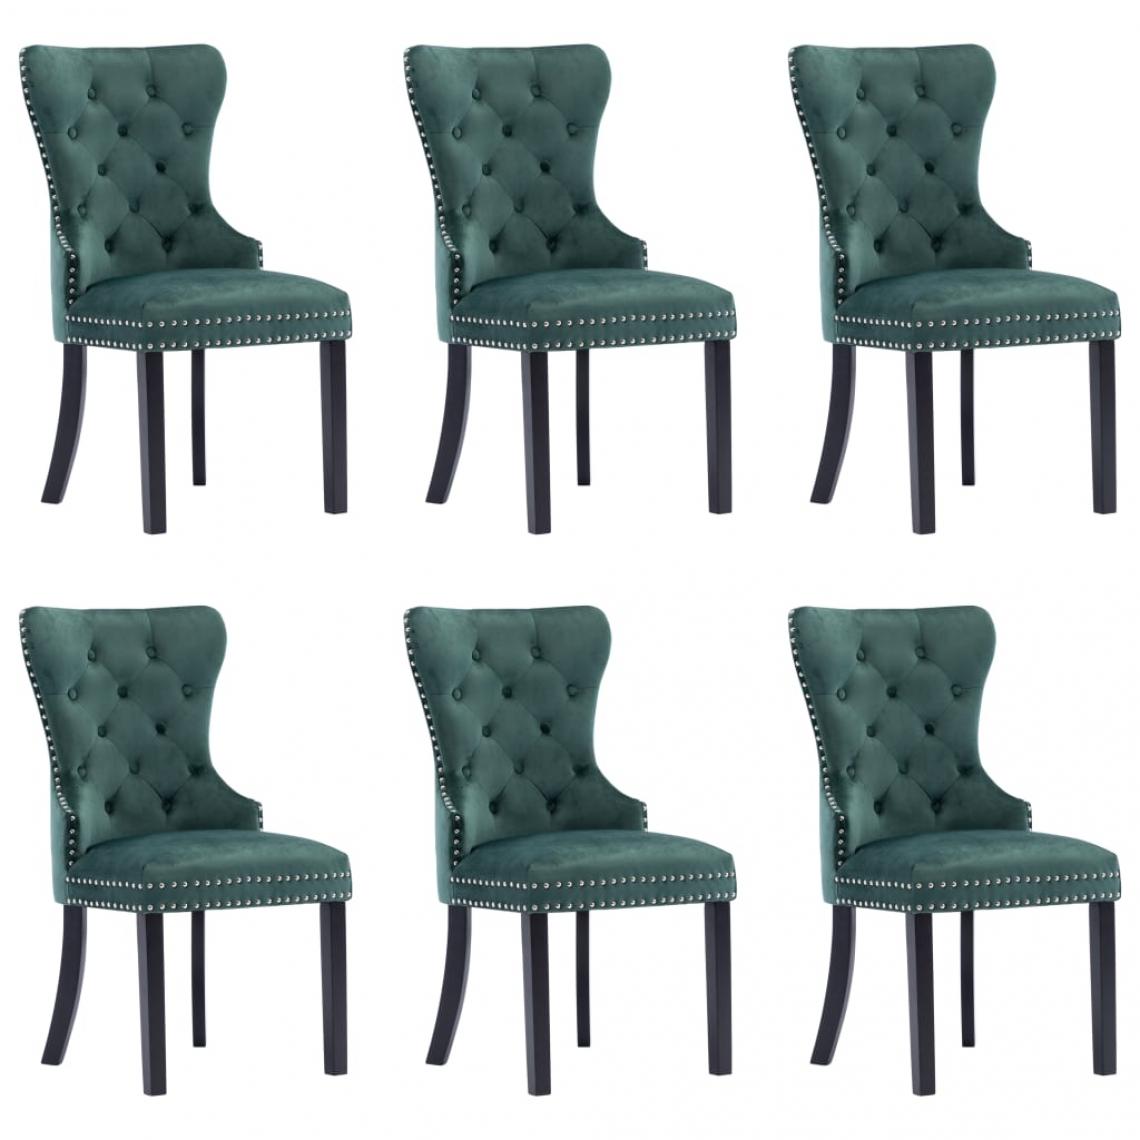 Decoshop26 - Lot de 6 chaises de salle à manger cuisine design classique velours vert foncé CDS022890 - Chaises